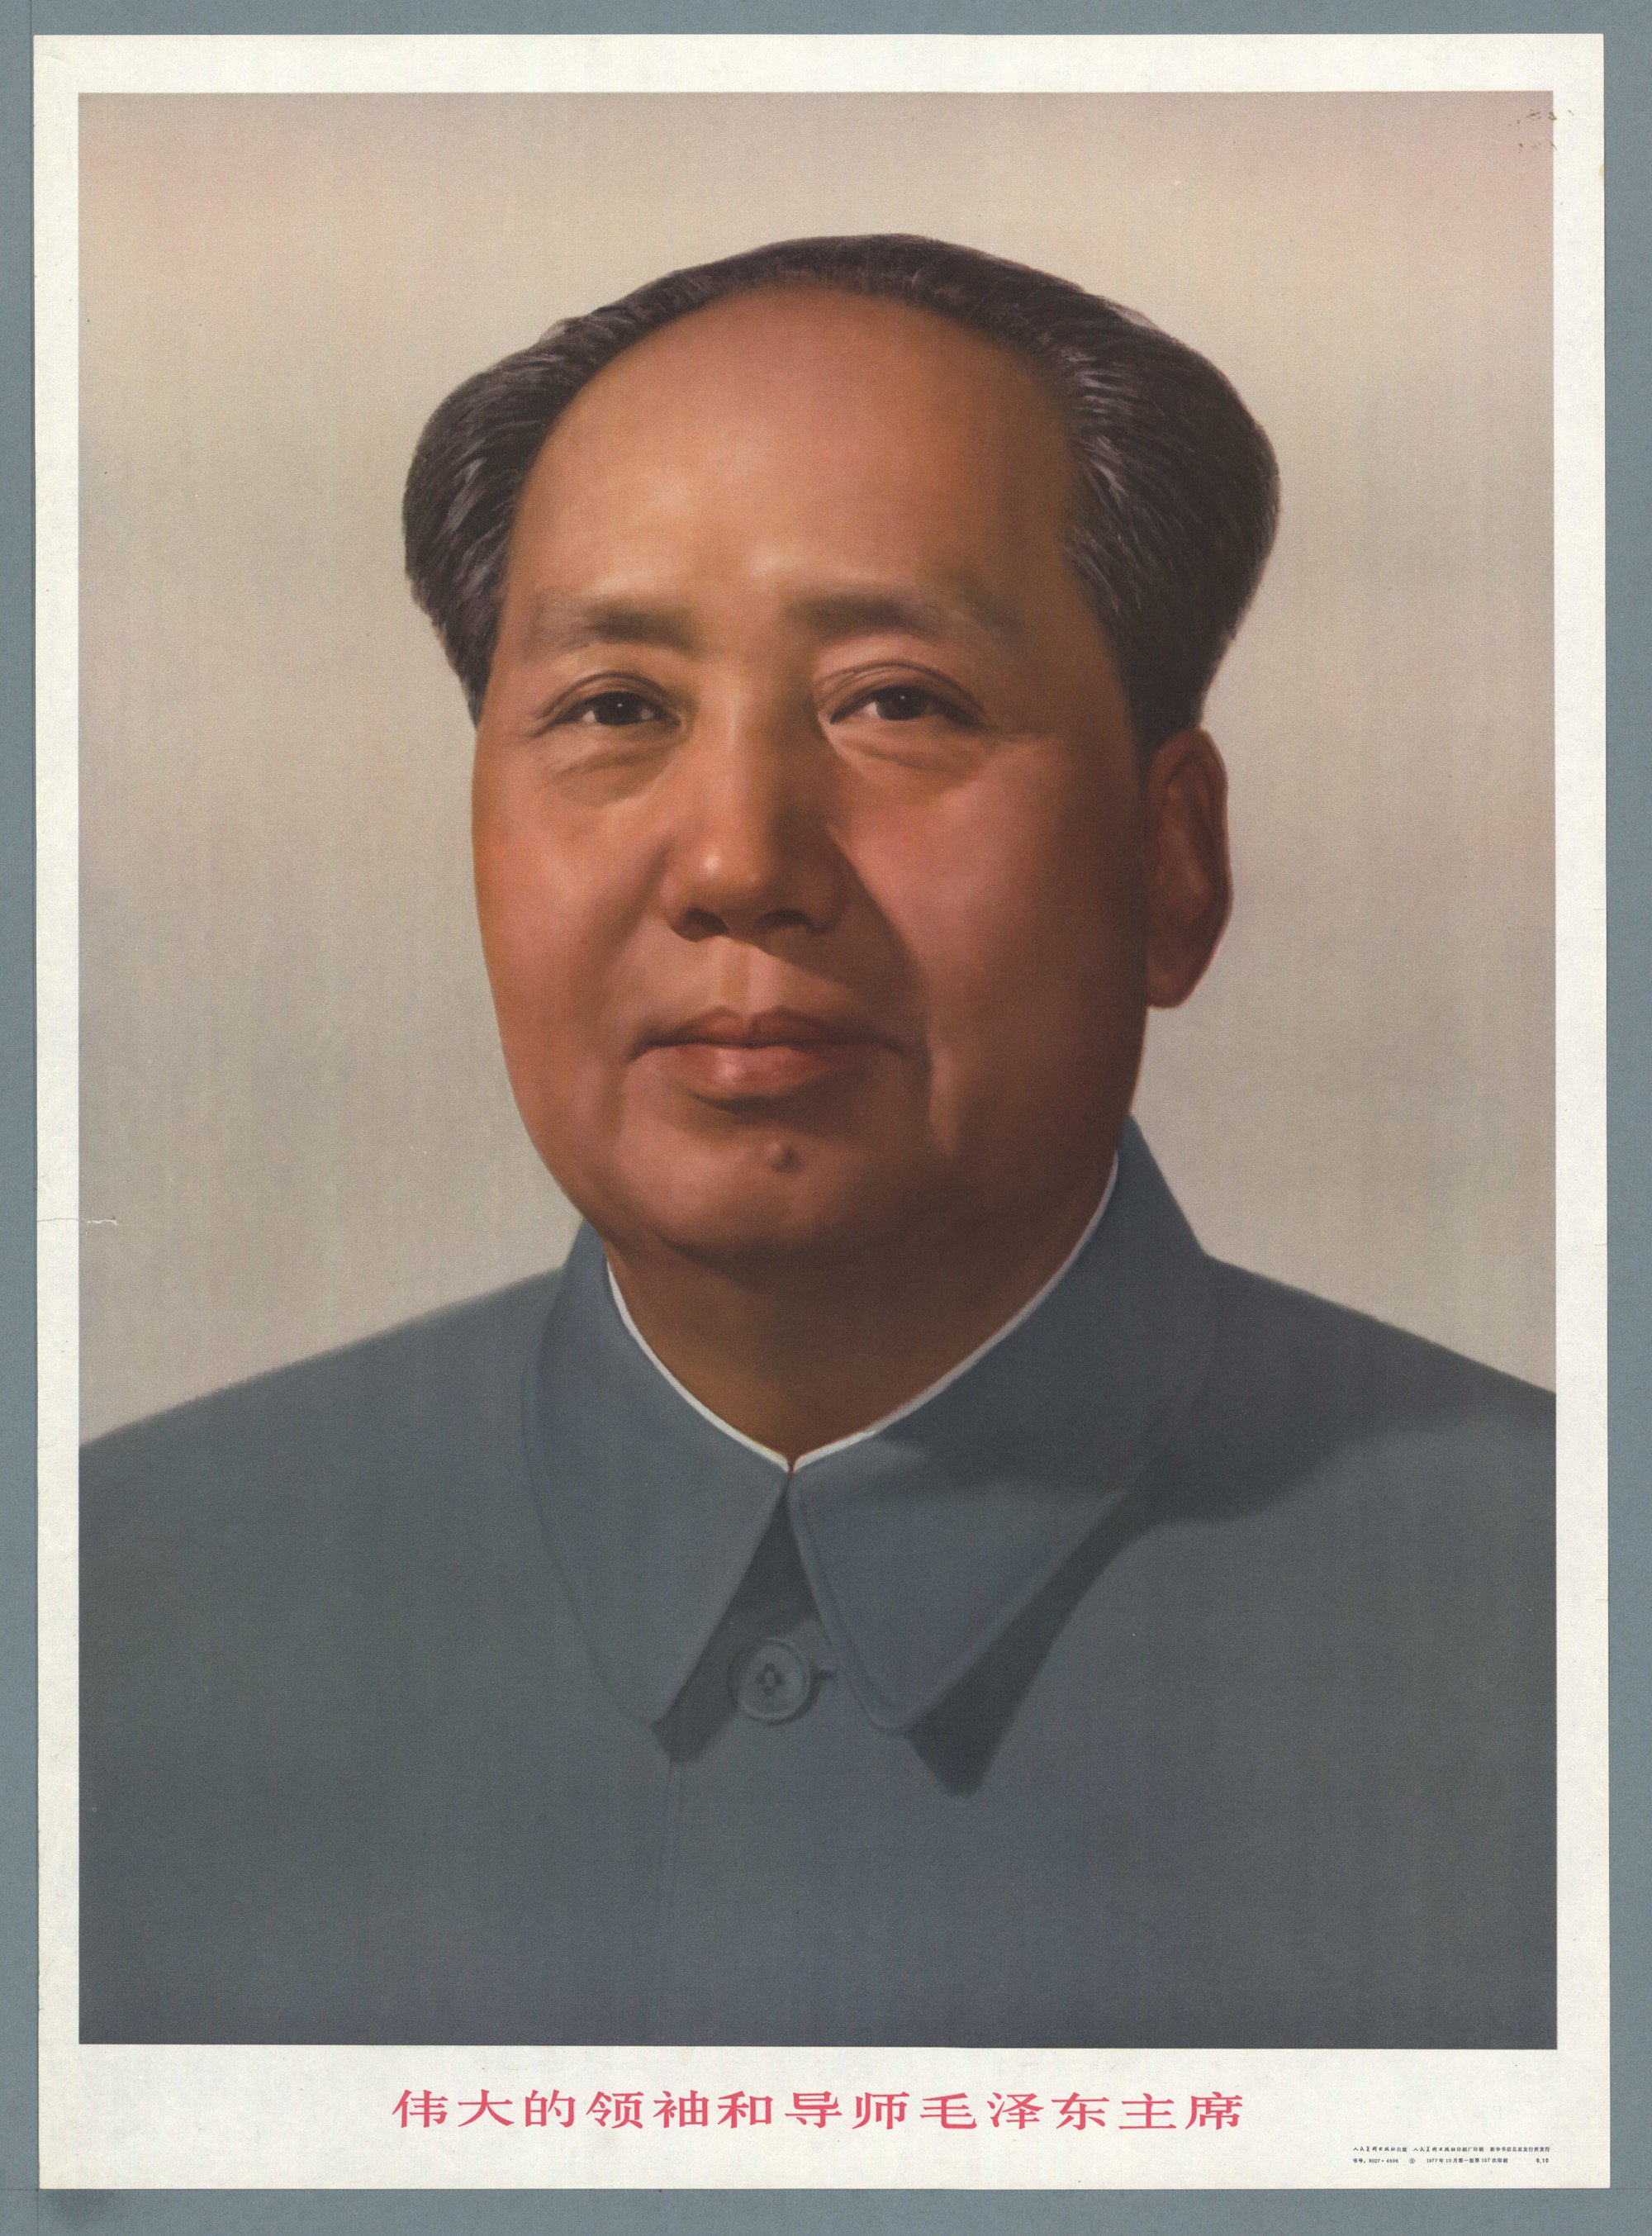 Poster-mao-ze-dong-great-leader-and-teacher.jpg